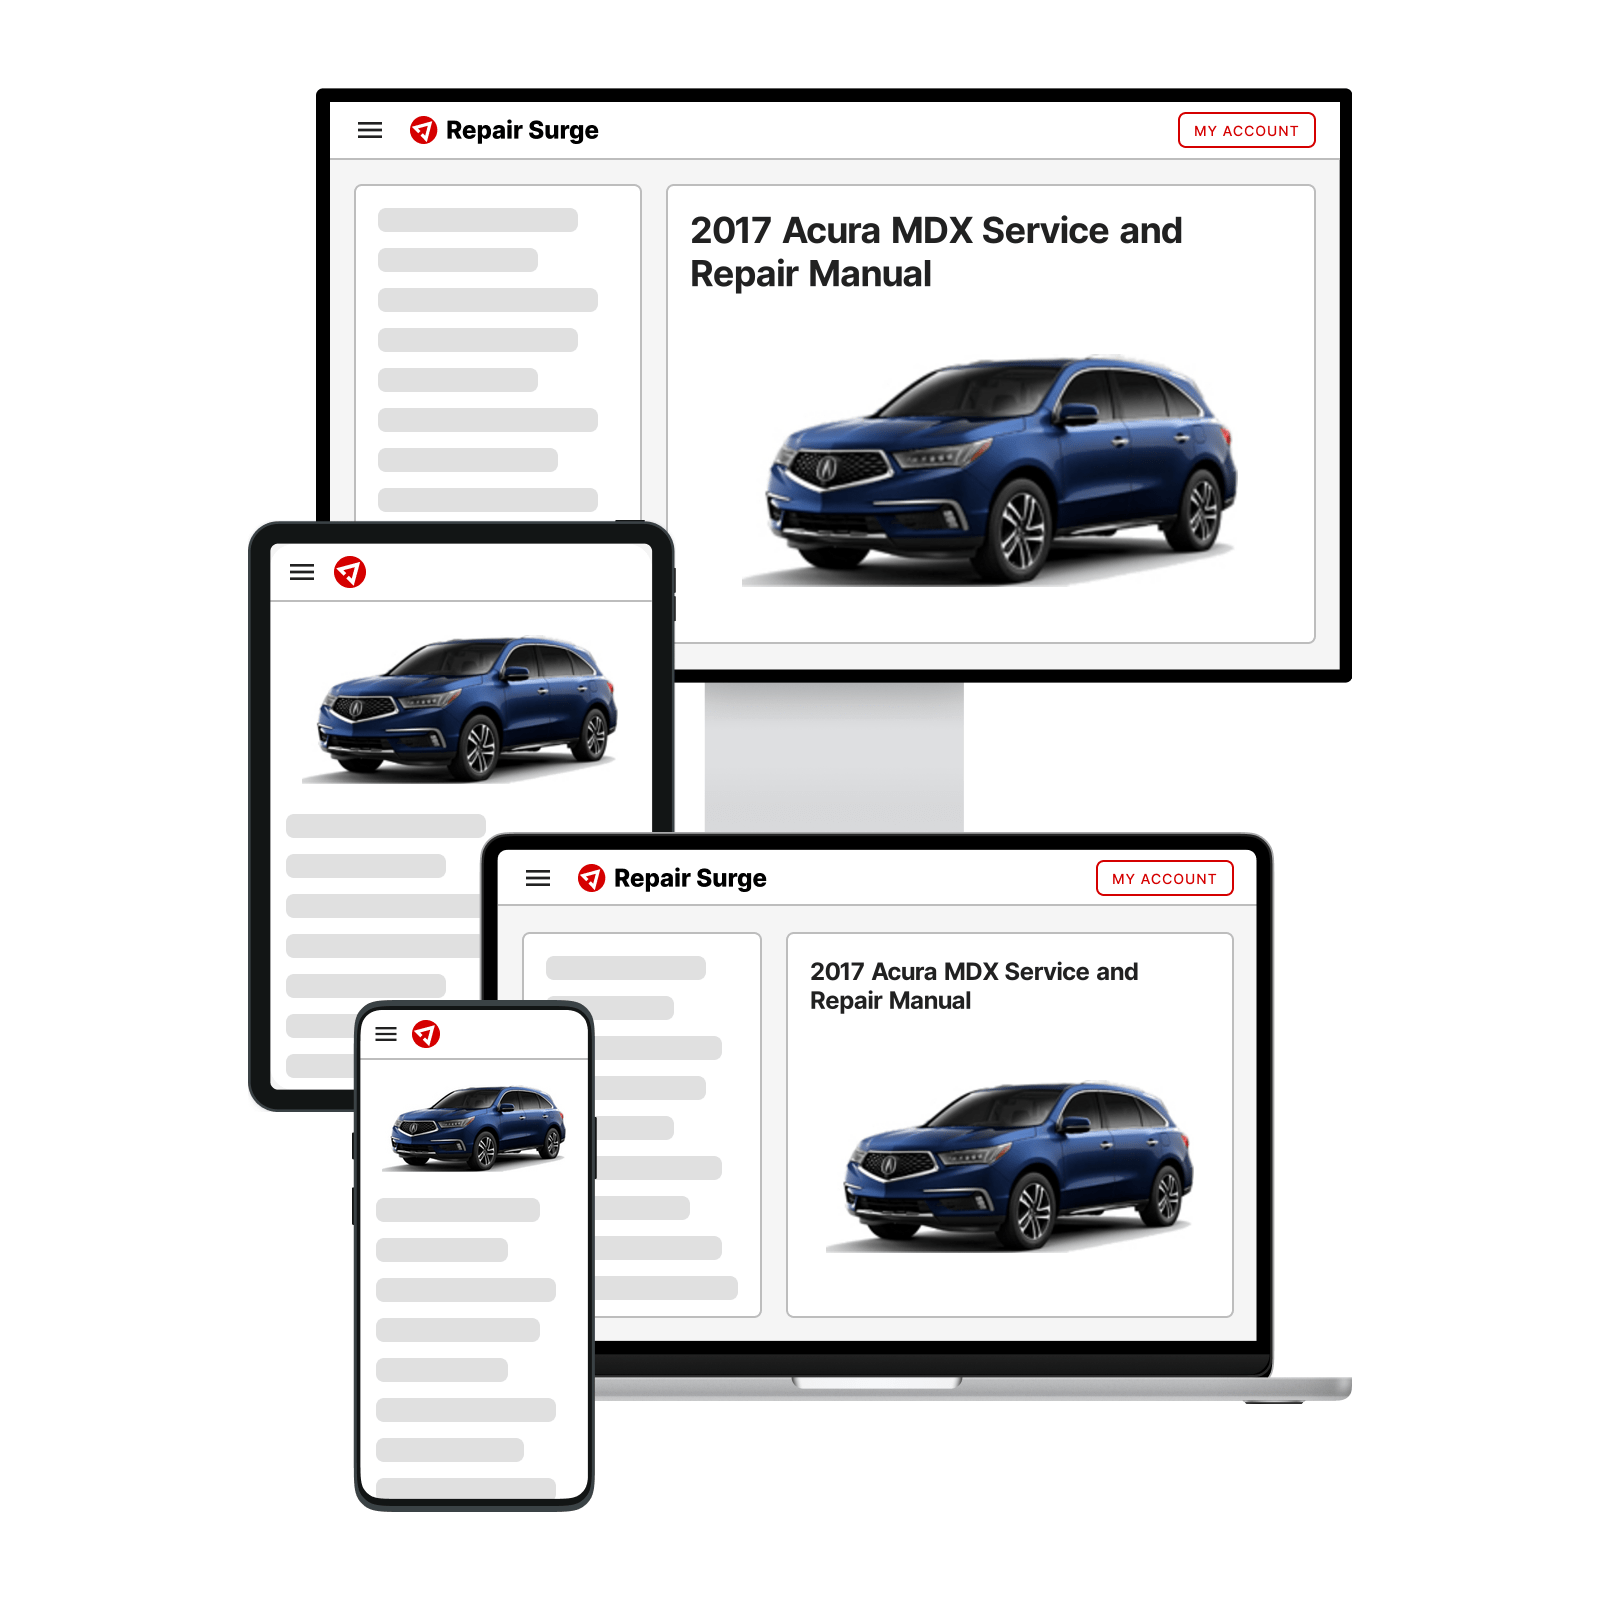 2017 Acura MDX service and repair manual hero image